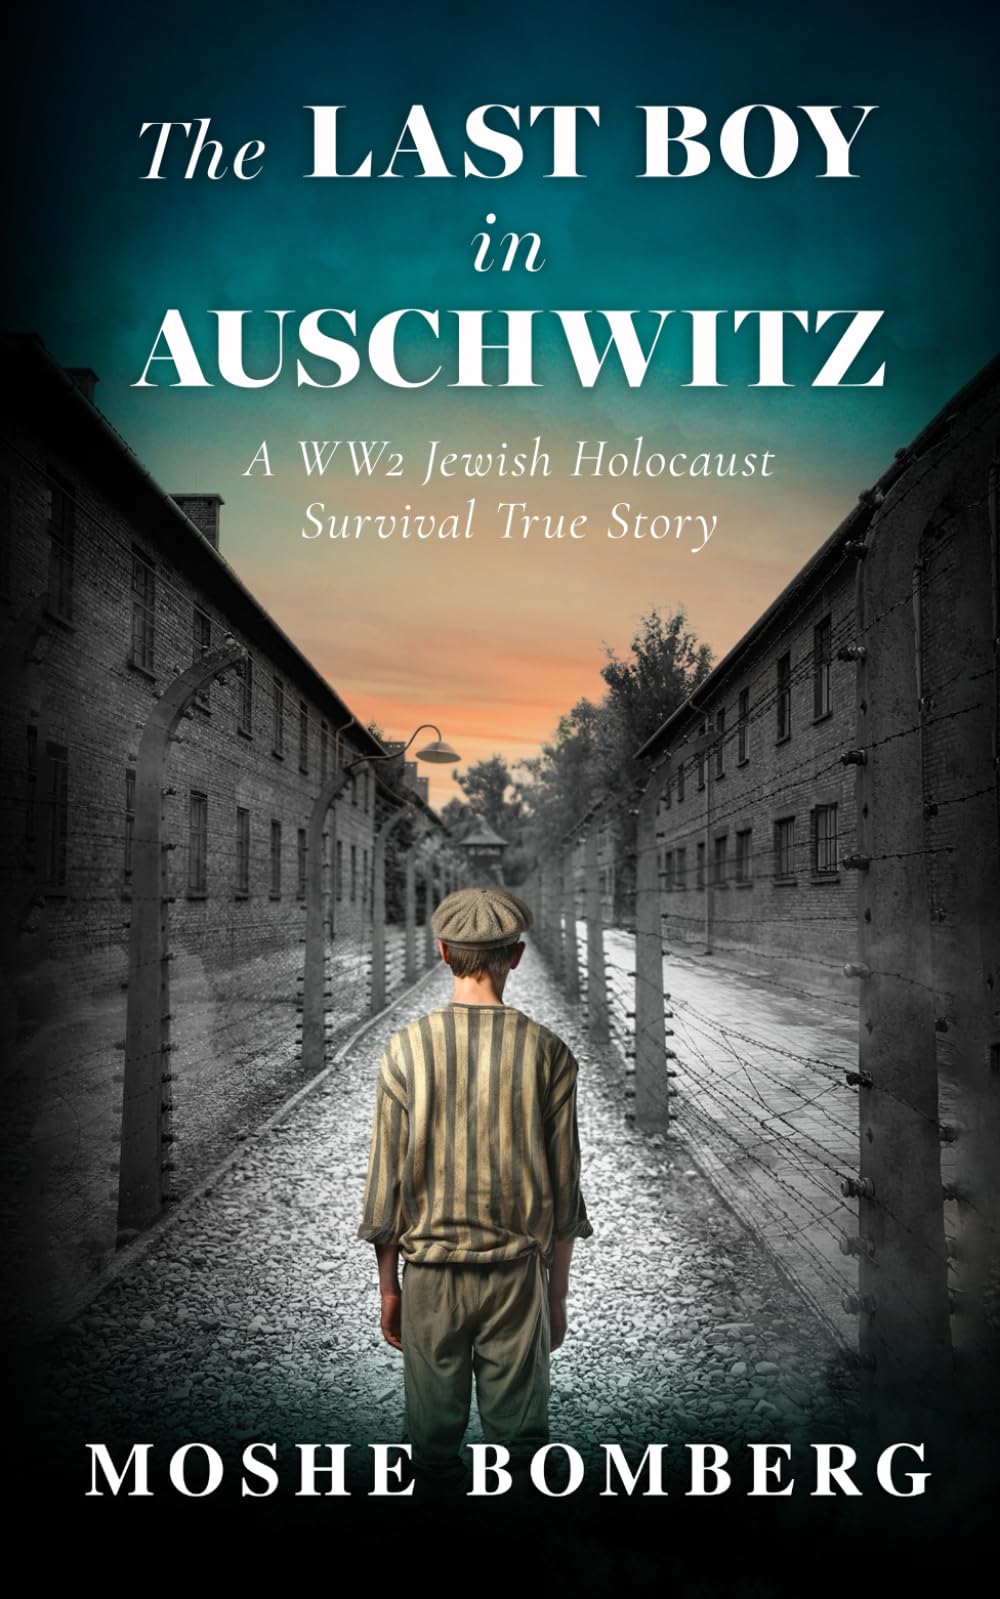 The Last Boy in Auschwitz: A WW2 Jewish Holocaust Survival True Story (Heroic Children of World War II)